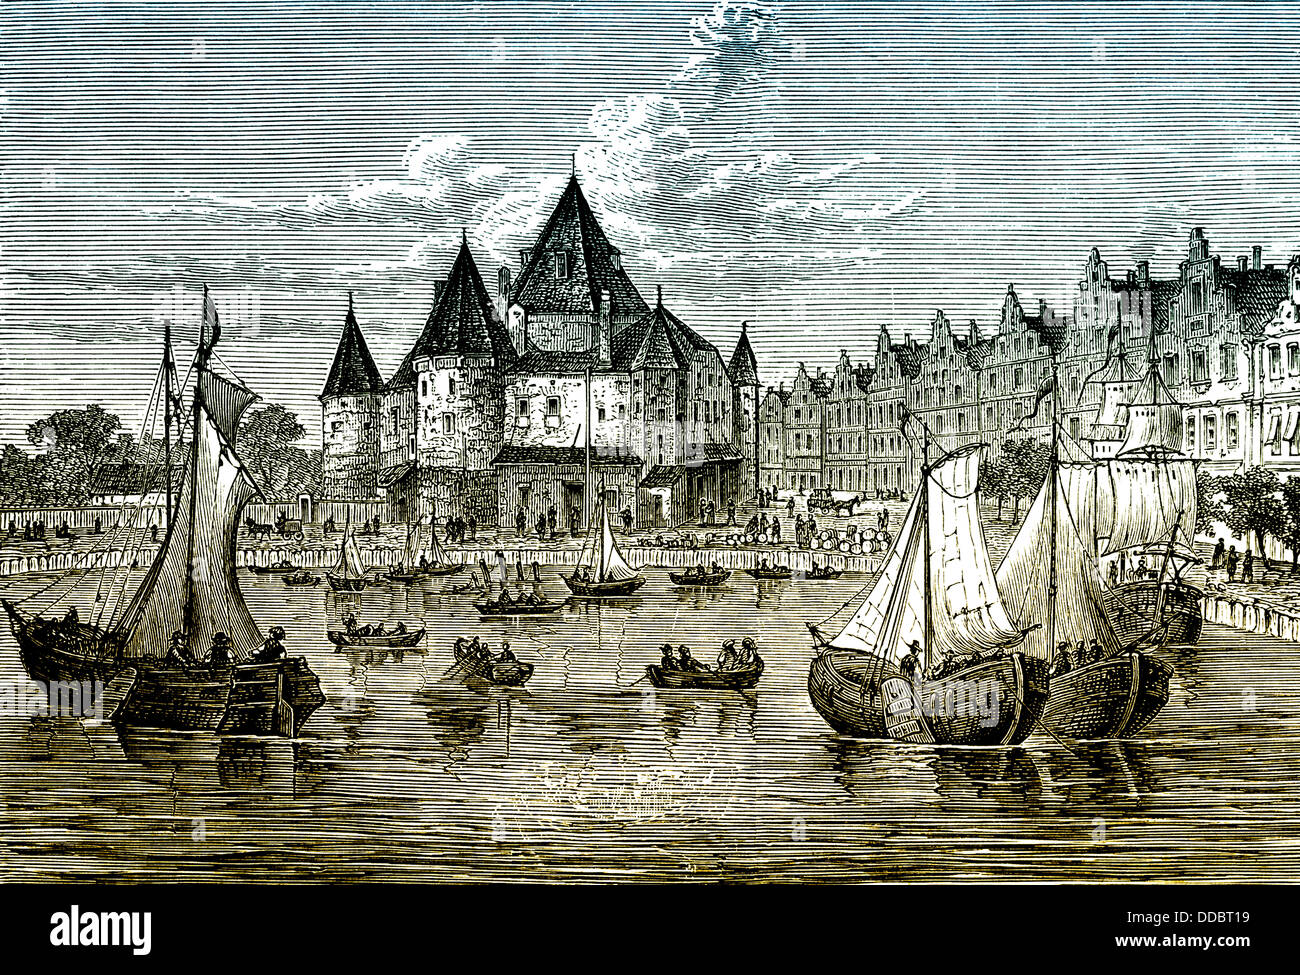 La ville historique d'Amsterdam, 16e siècle, la Hollande du Nord, Pays-Bas, Europe Banque D'Images